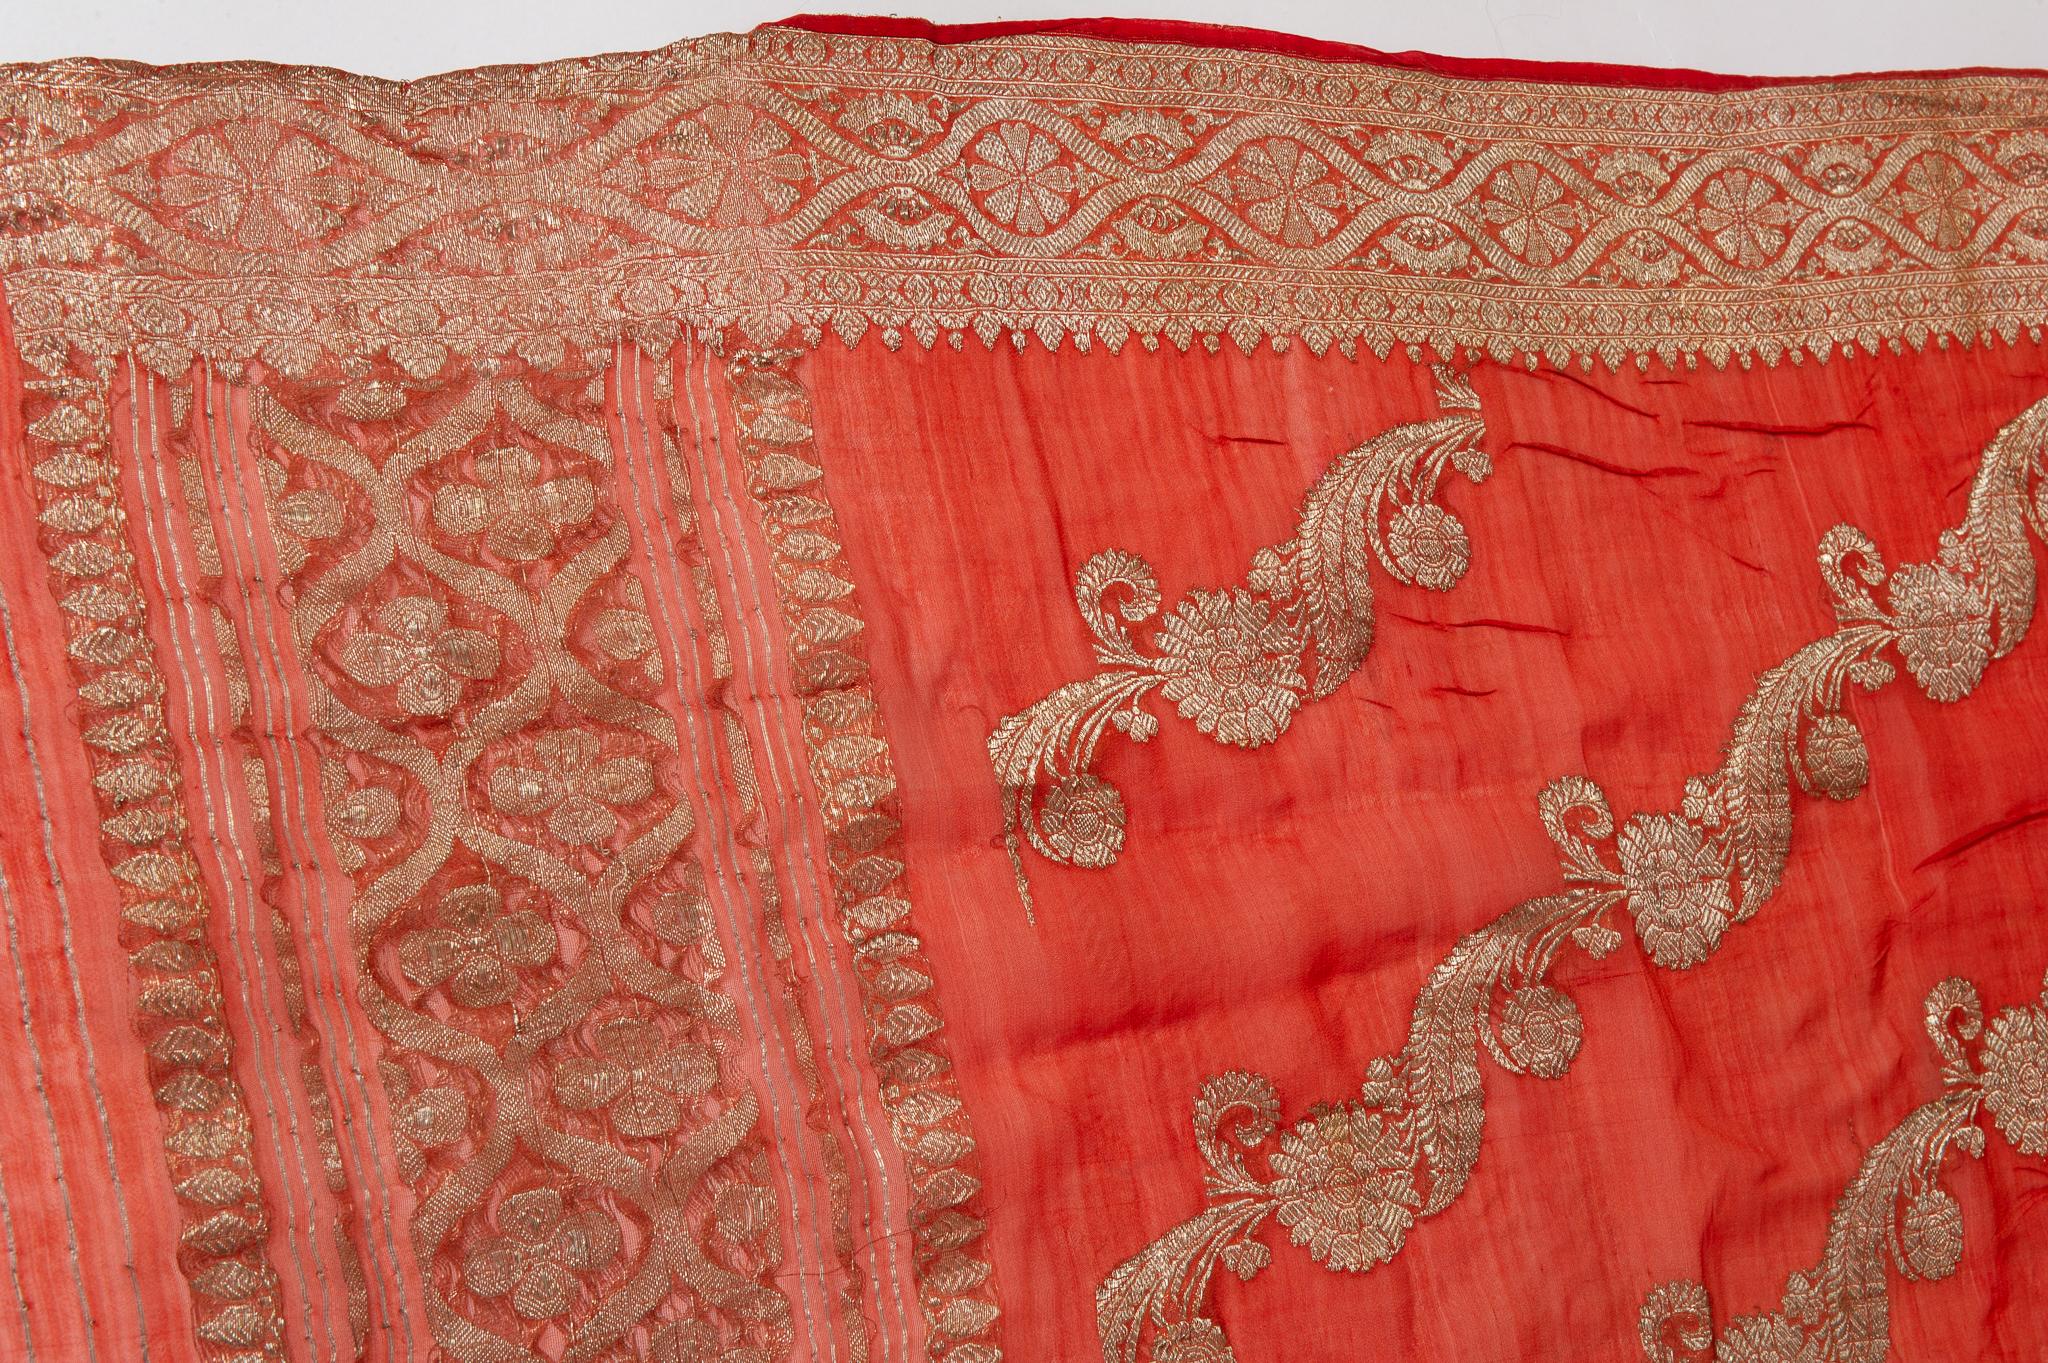  Sari indien couleur corail Nouvelle idée de rideaux inhabituels aussi en vente 8